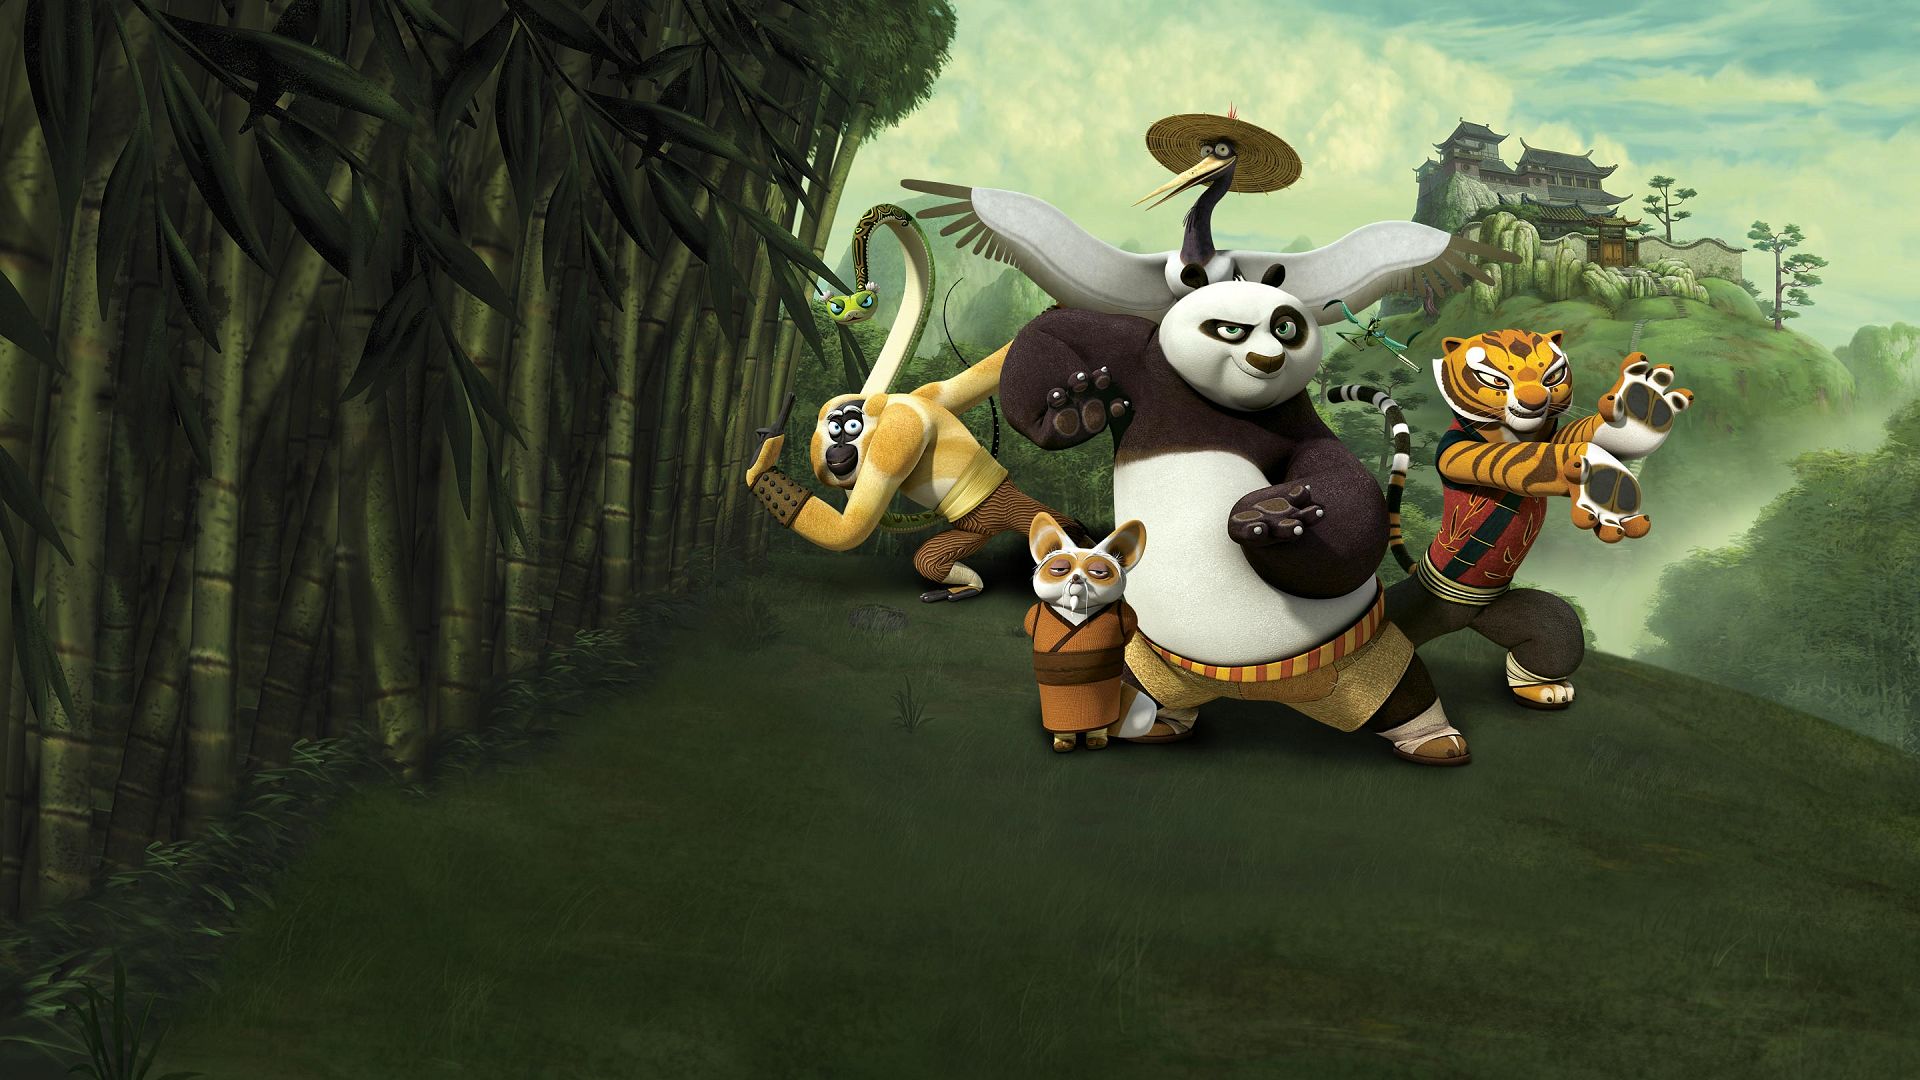 Kung Fu Panda: Legends of Awesomeness - Nickelodeon - Watch on